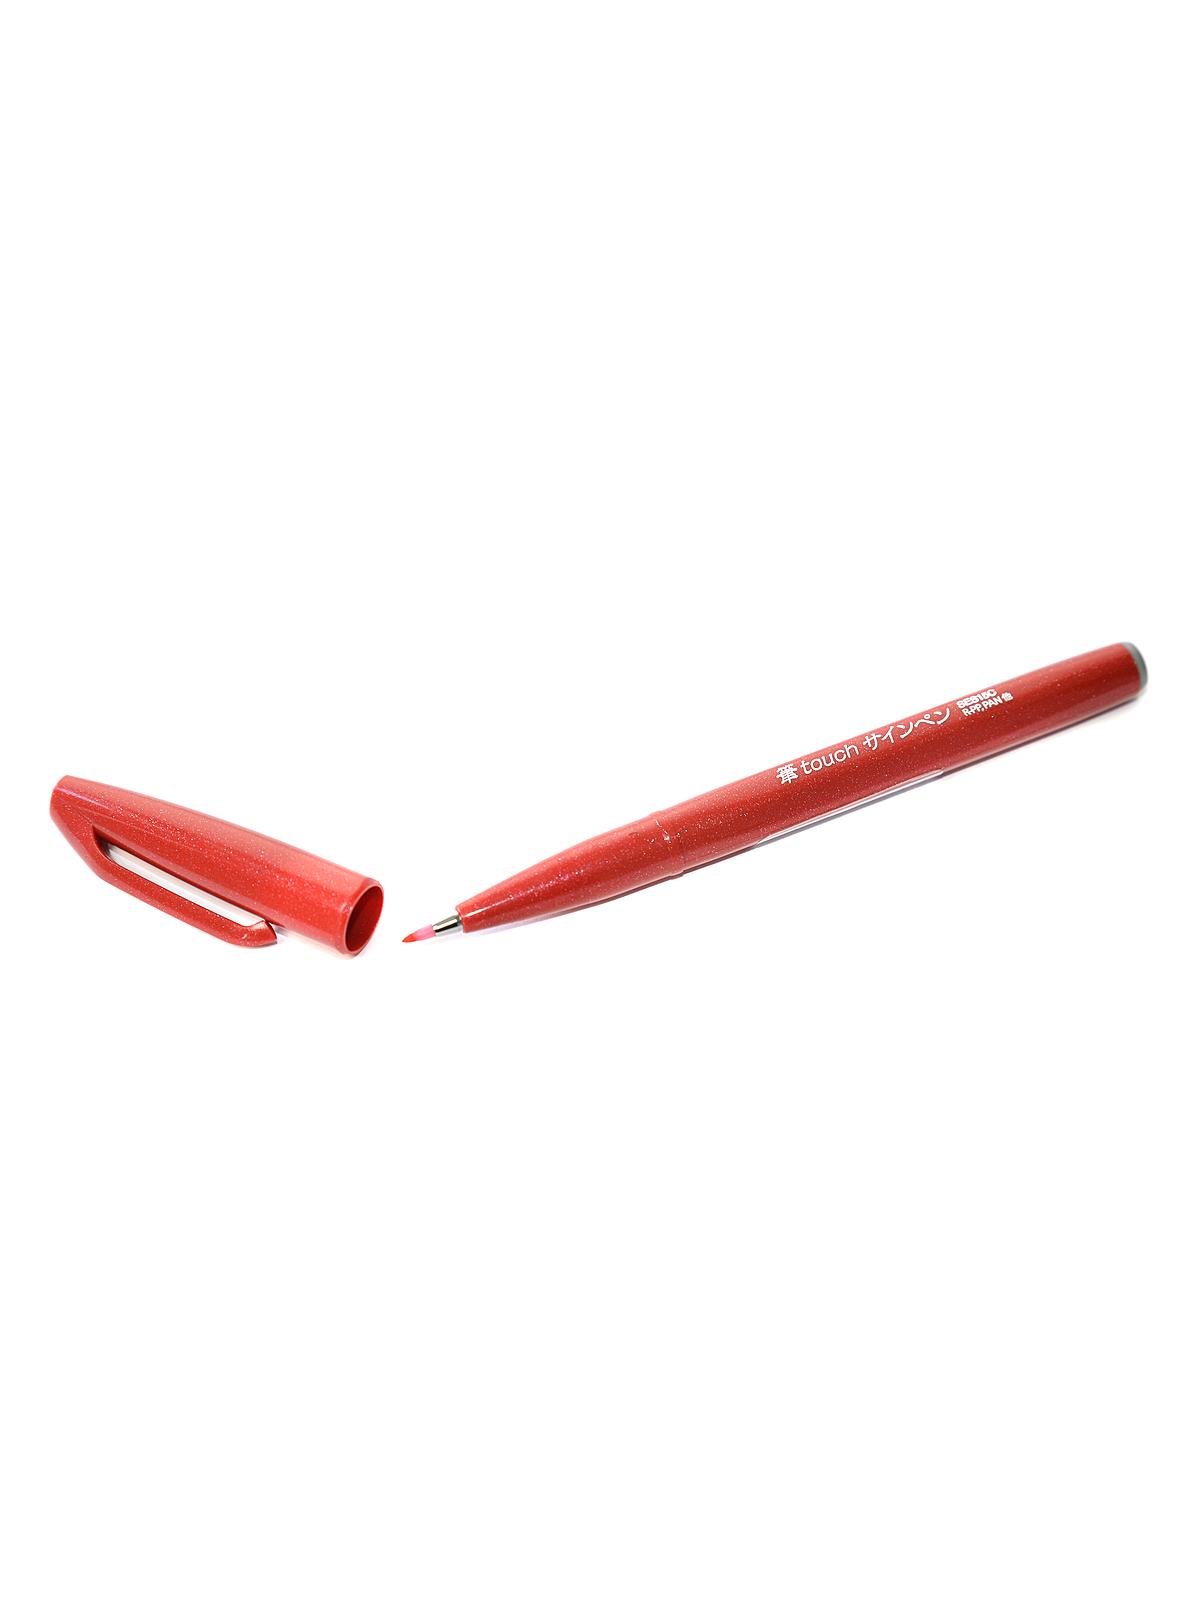 Pentel - Sign Pen Brush-Tip